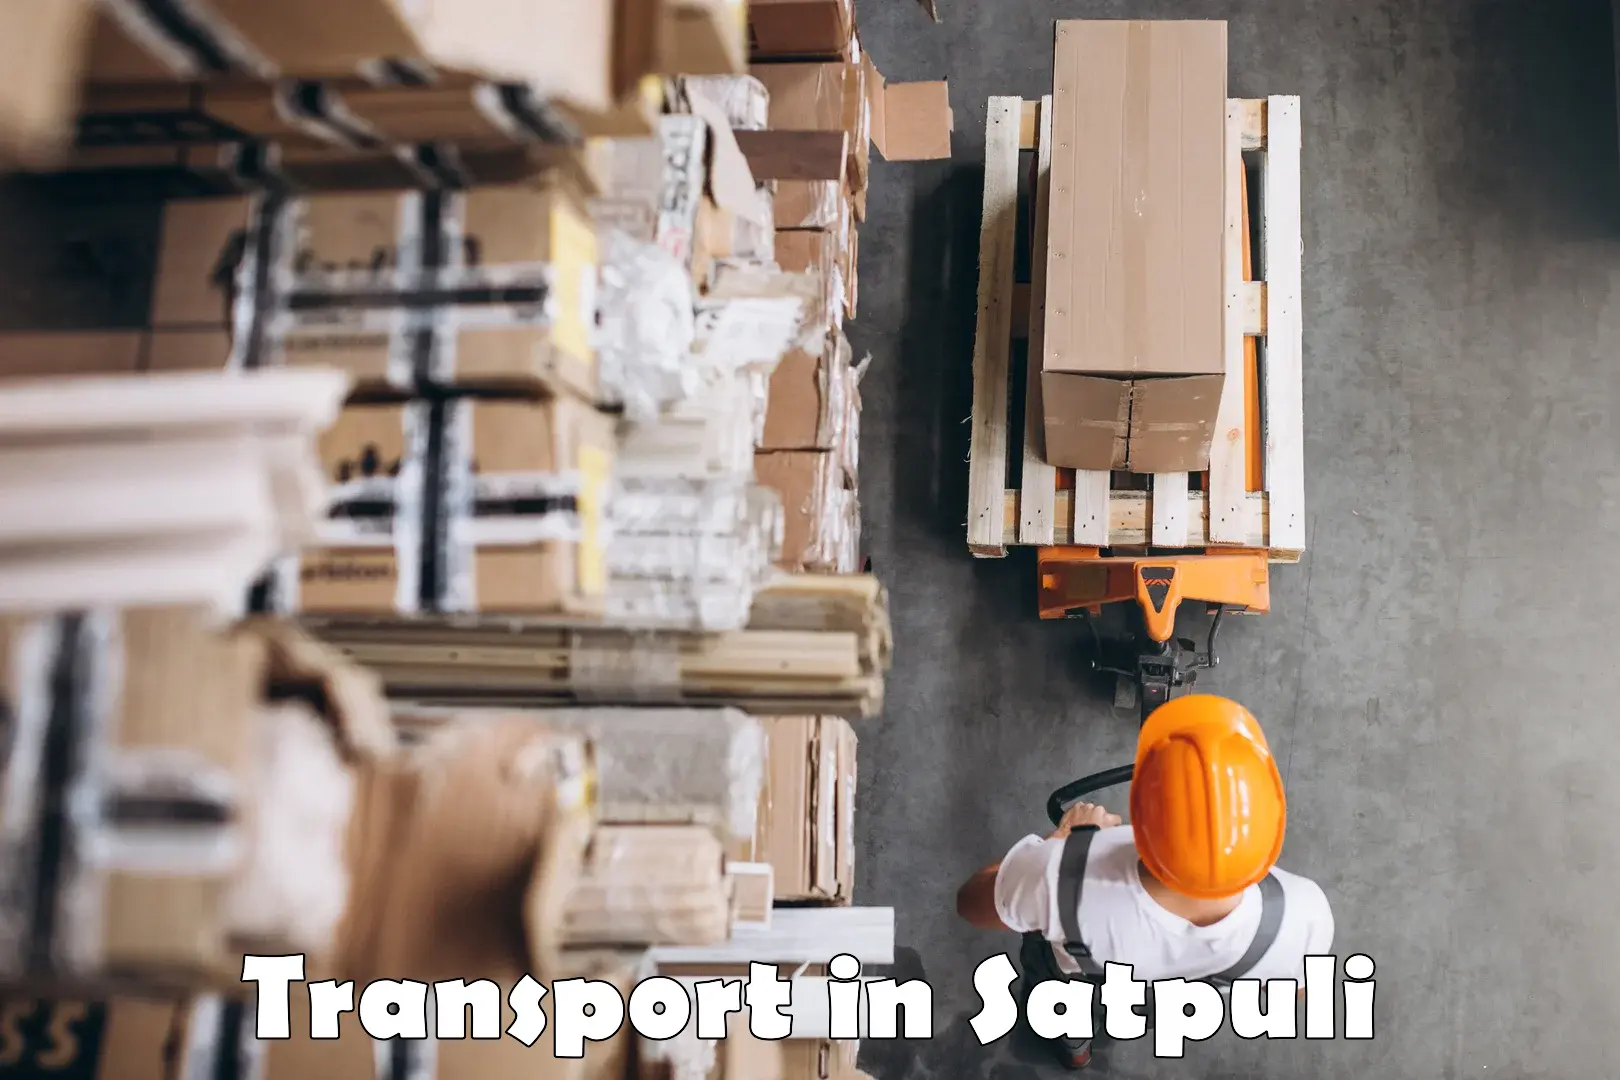 India truck logistics services in Satpuli